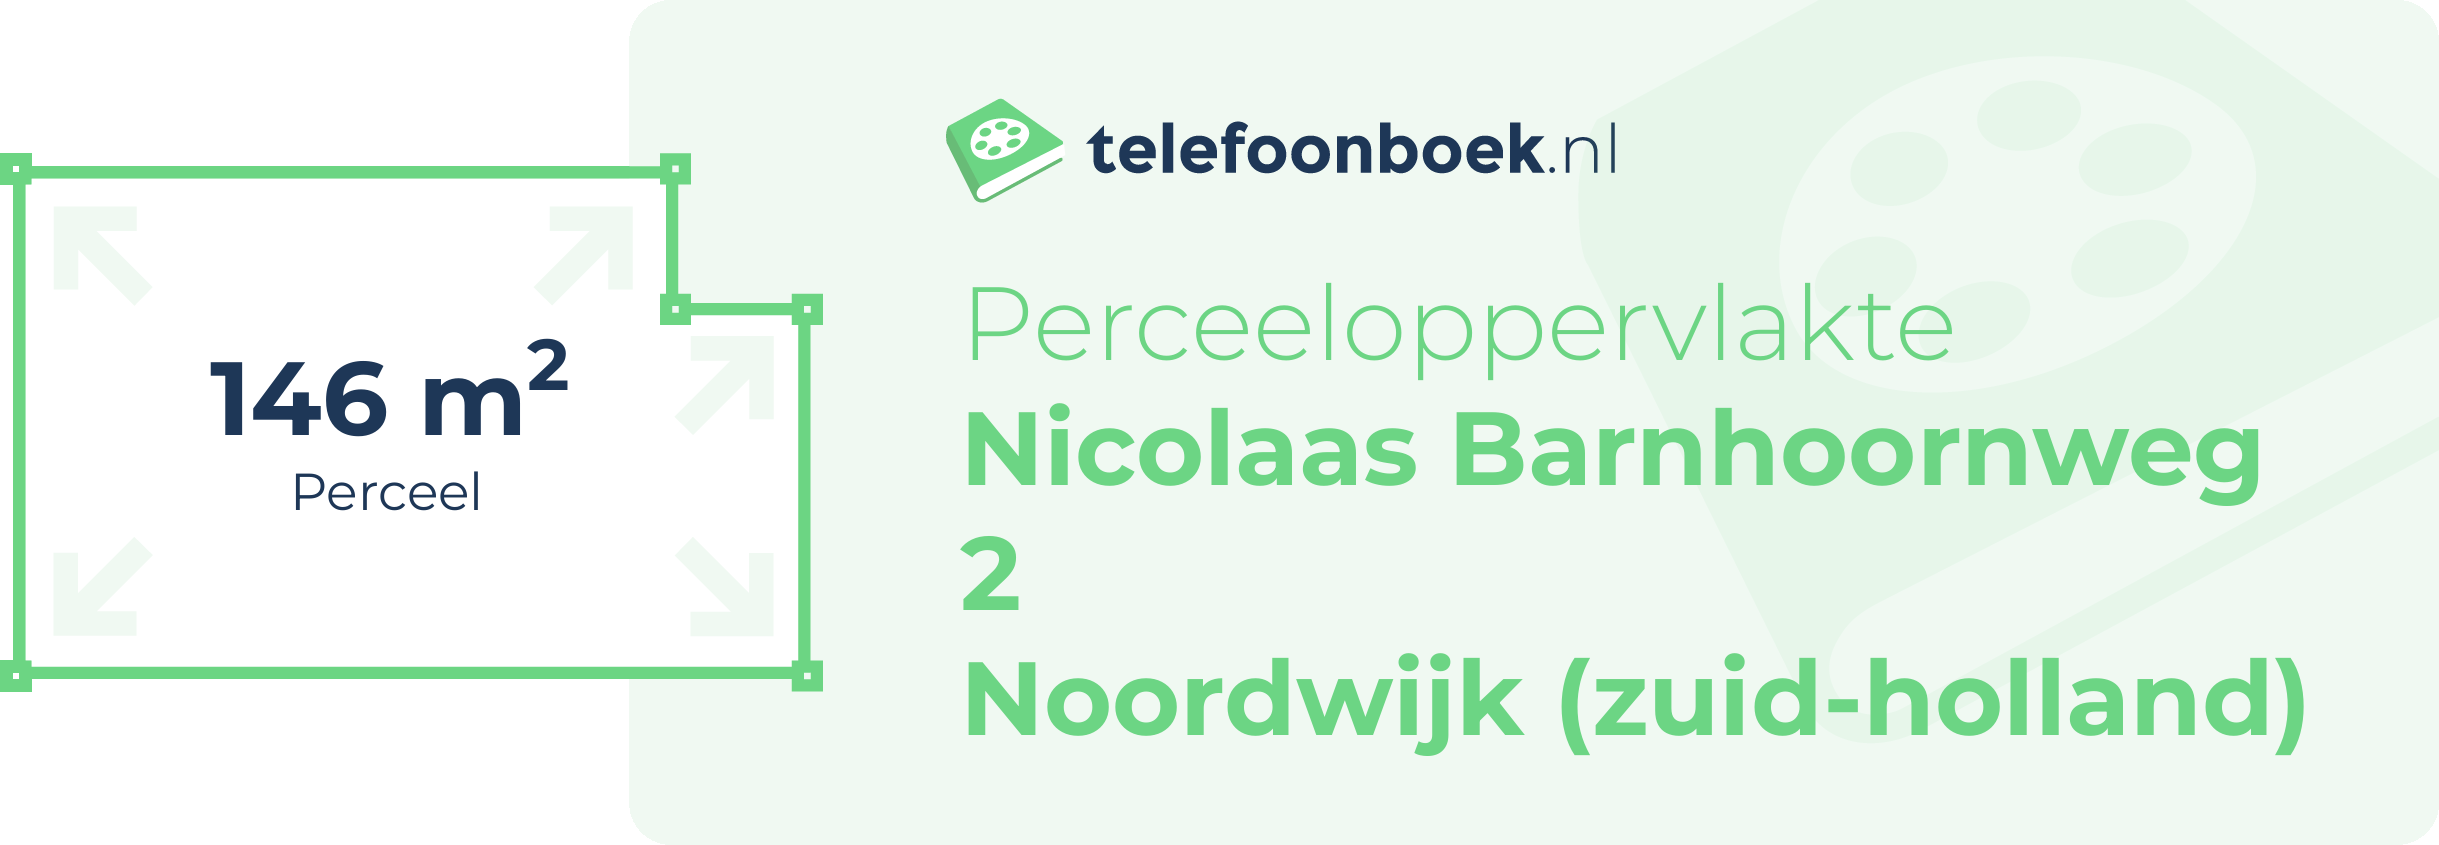 Perceeloppervlakte Nicolaas Barnhoornweg 2 Noordwijk (Zuid-Holland)